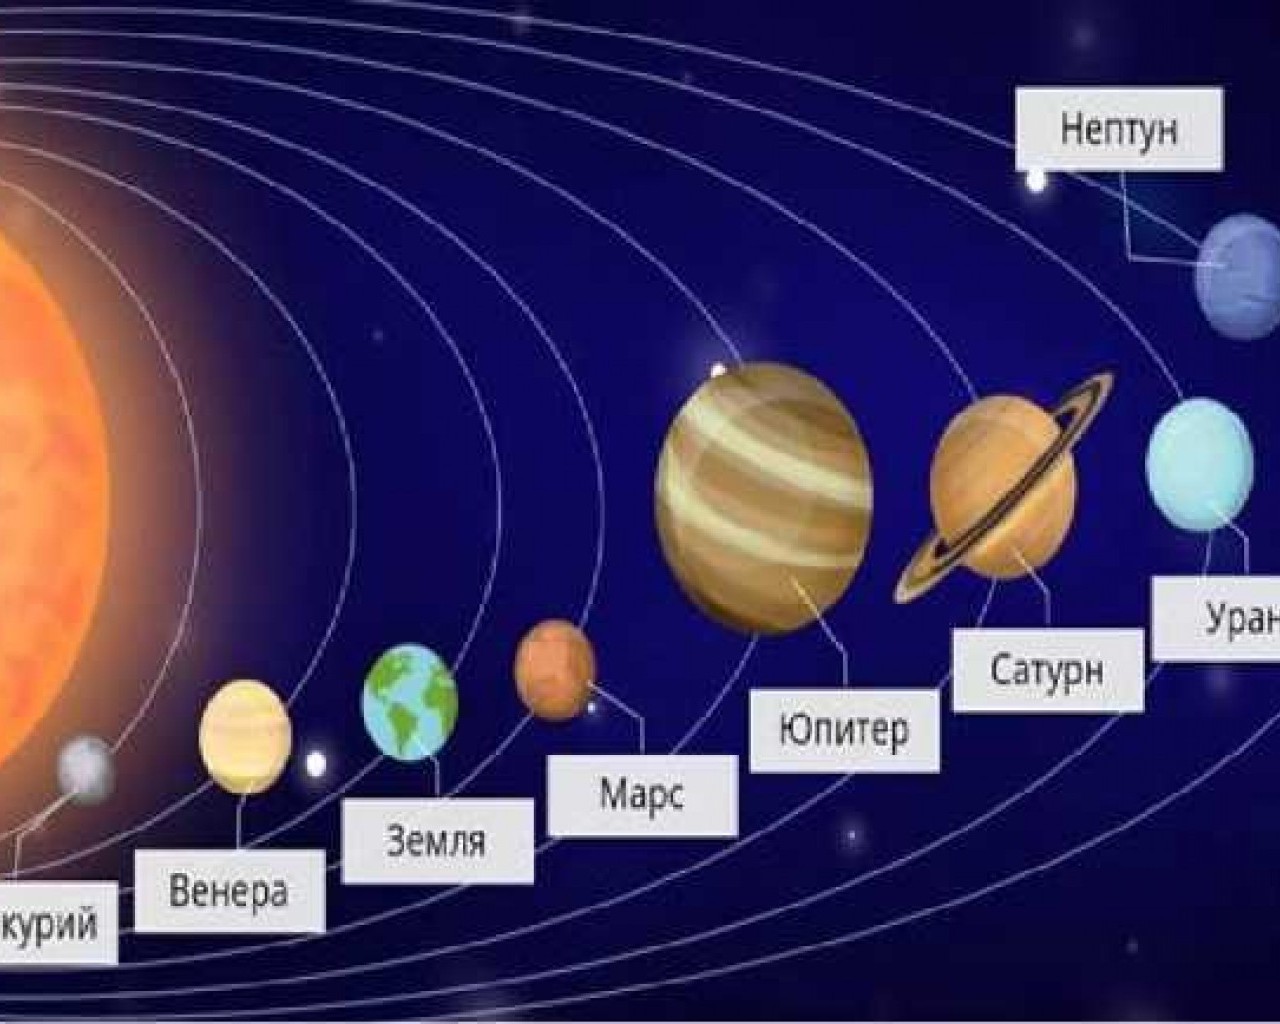 Планеты солнечной системы от Солнца - Меркурий, Венера, Земля, Марс, Юпитер, Сатурн, Уран, Нептун